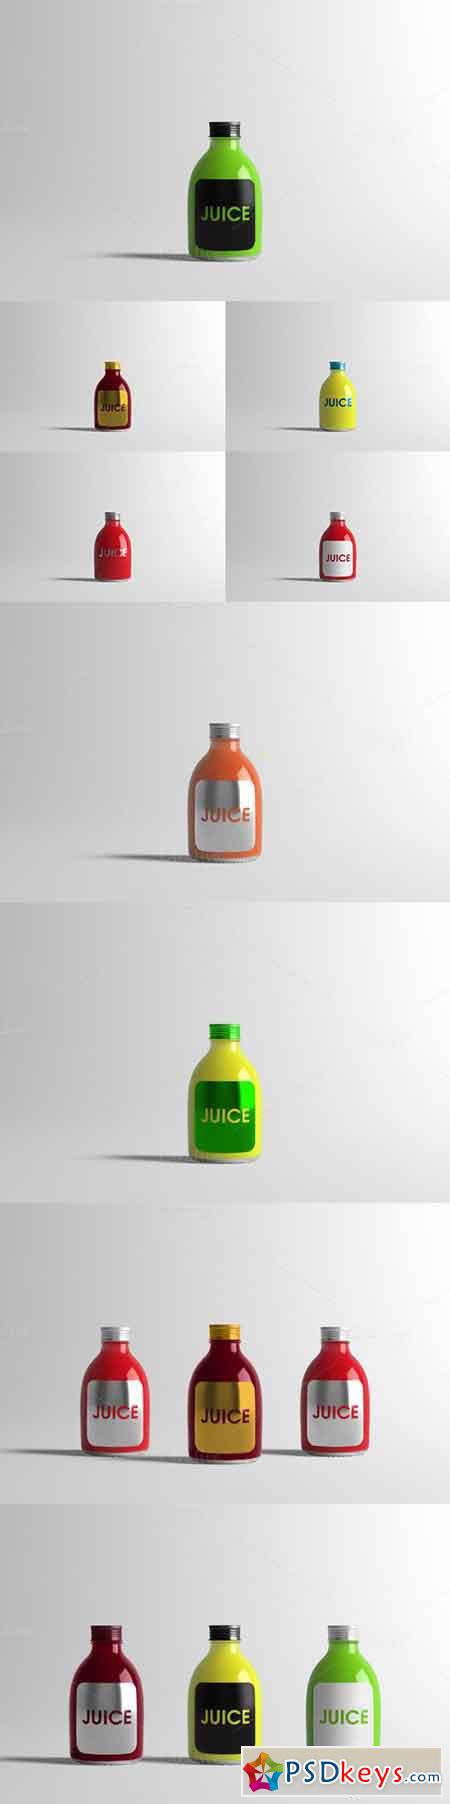 Juice Bottle Mock-Up 2 699672